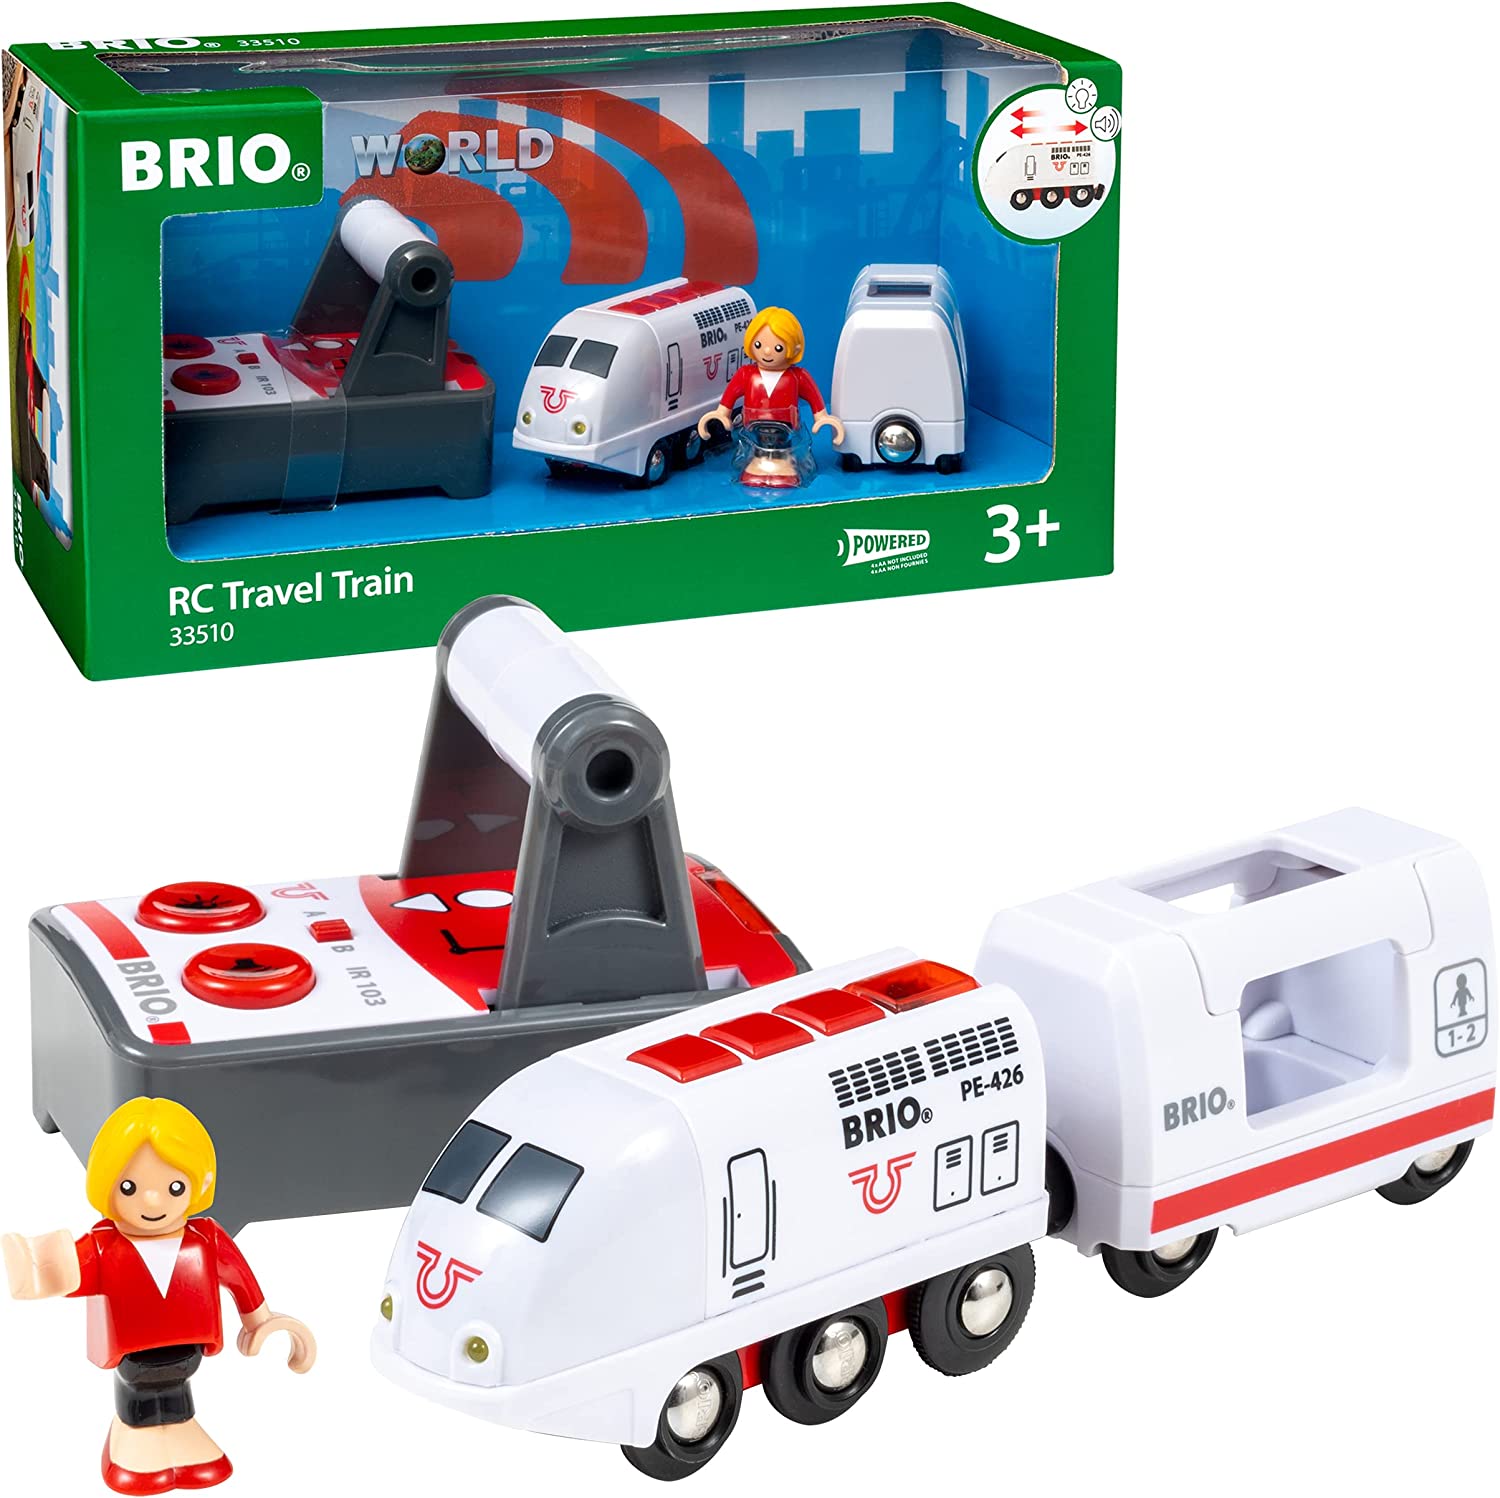 Brio RC Travel Train 4 pieces